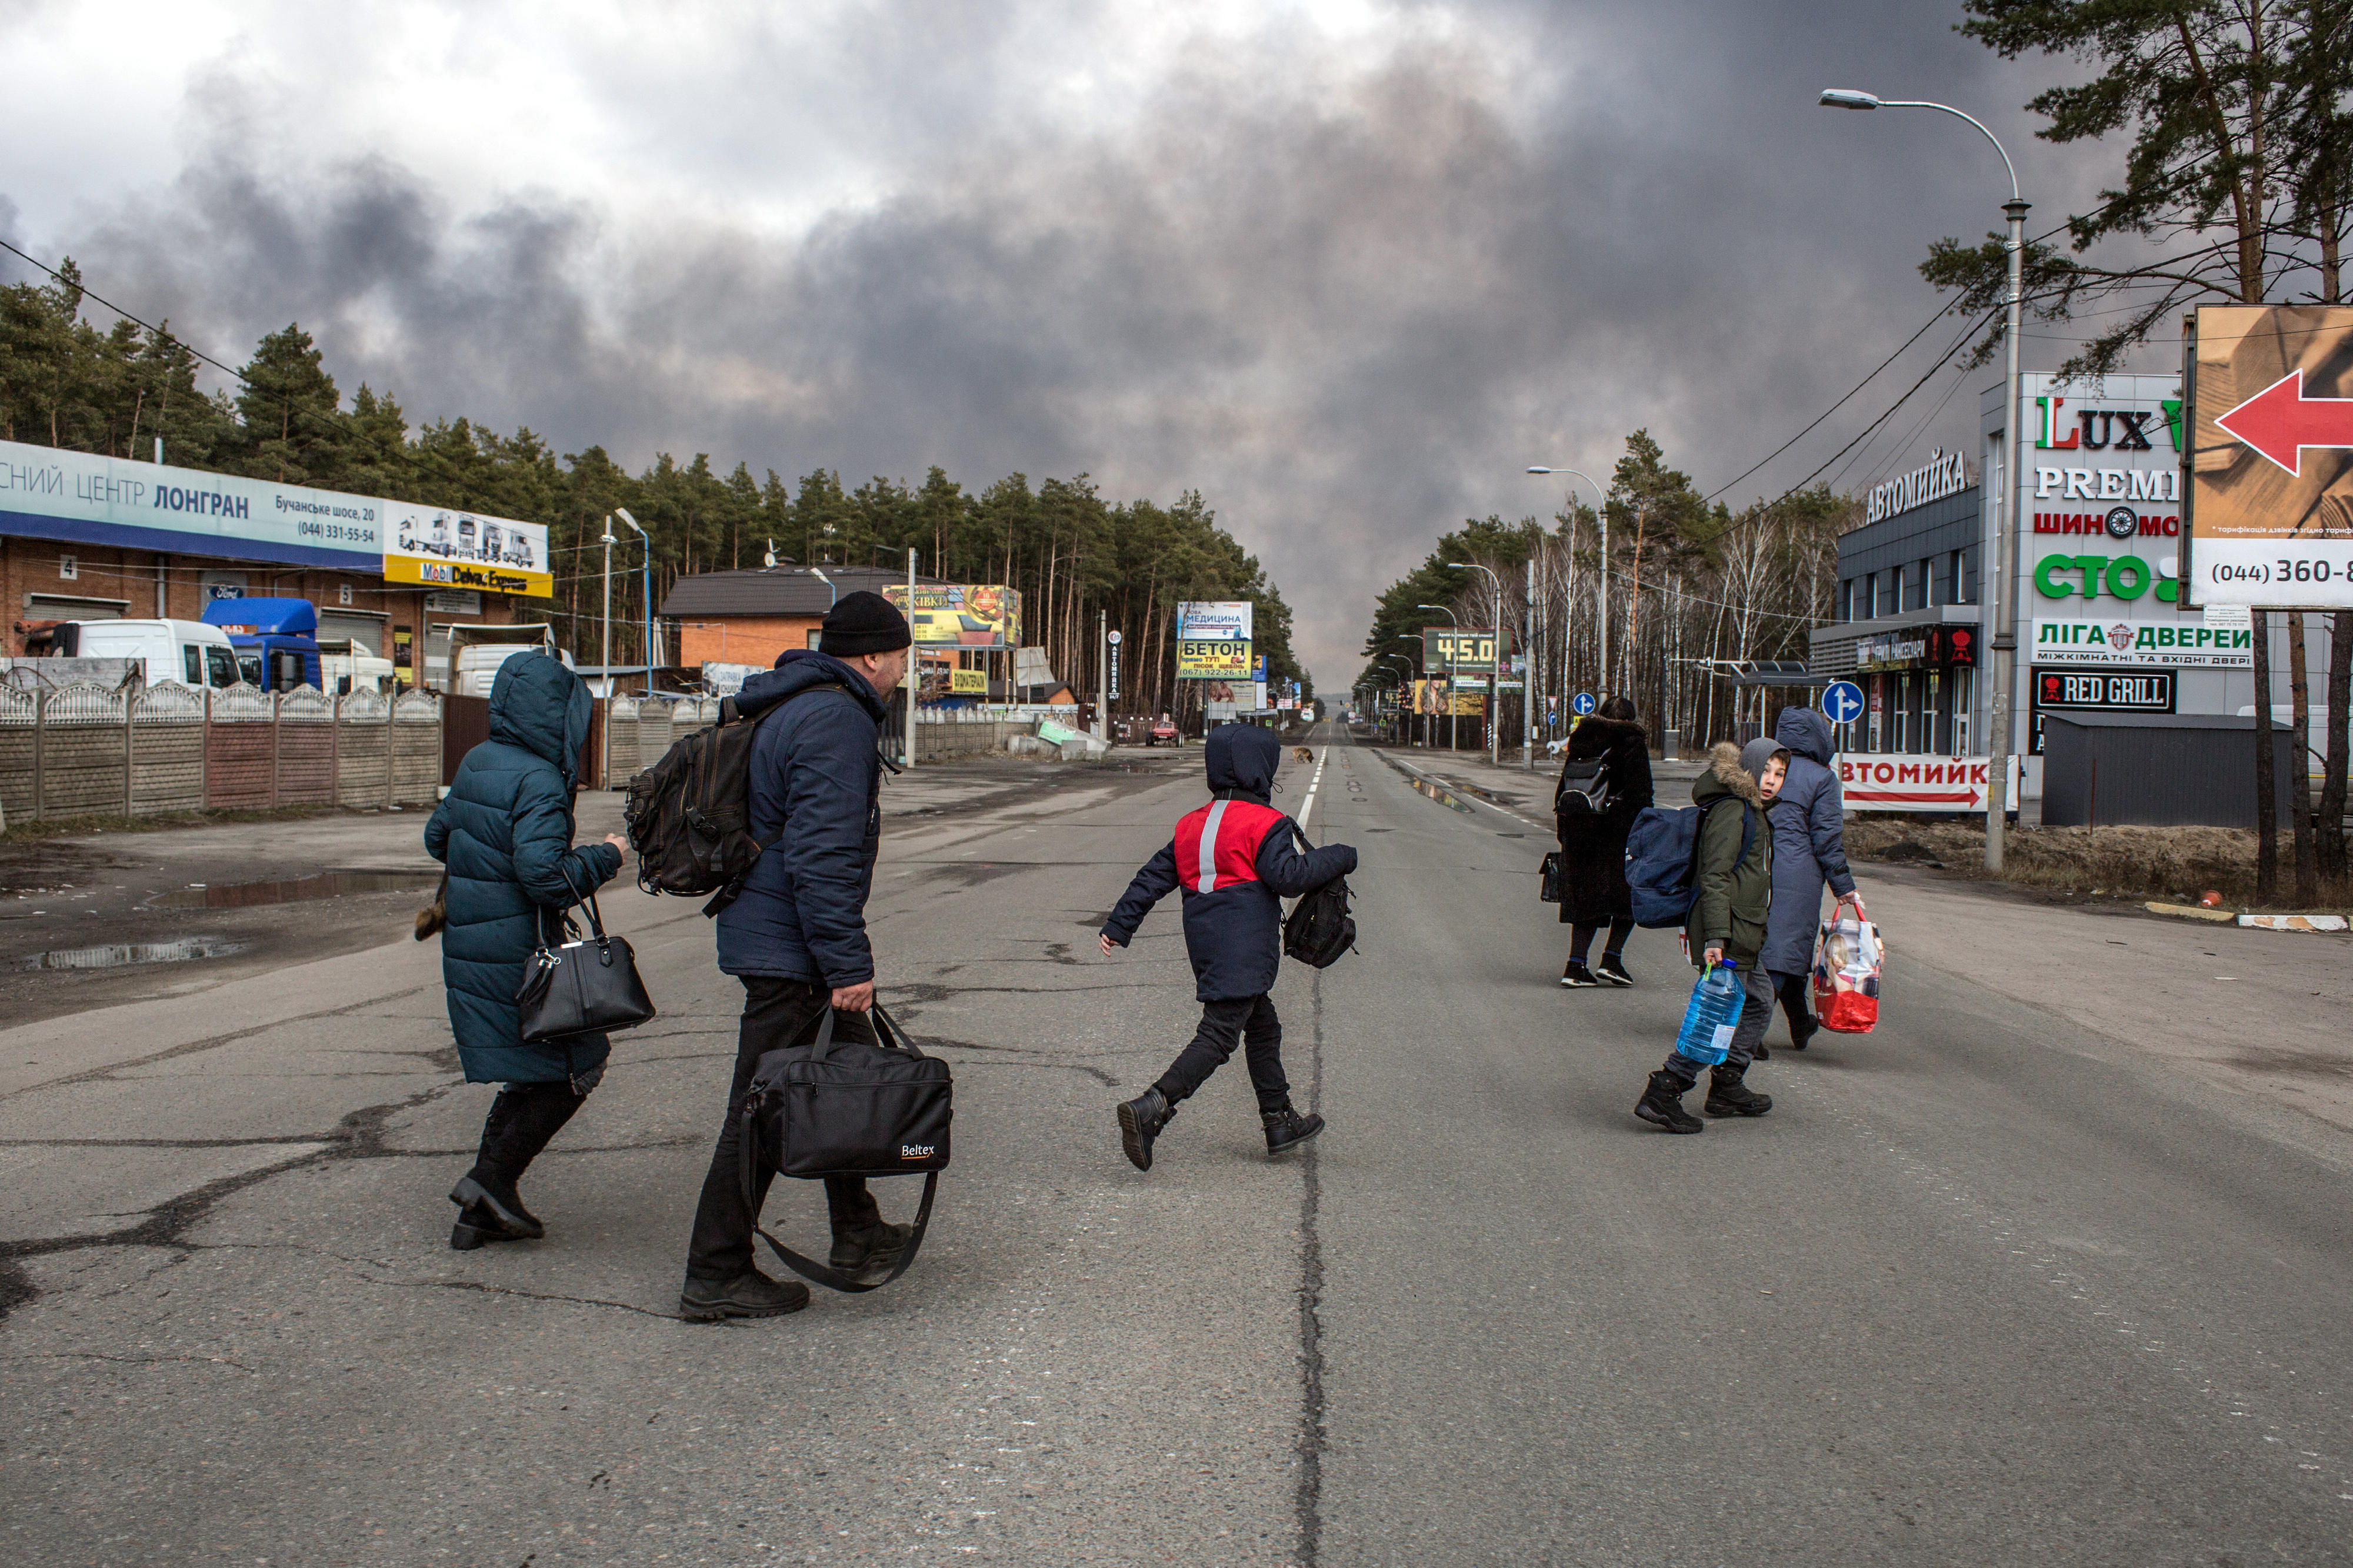 Vor Gewalt fliehende Menschen in Bucha, Kyiv Oblast, Ukraine, 4. März 2022